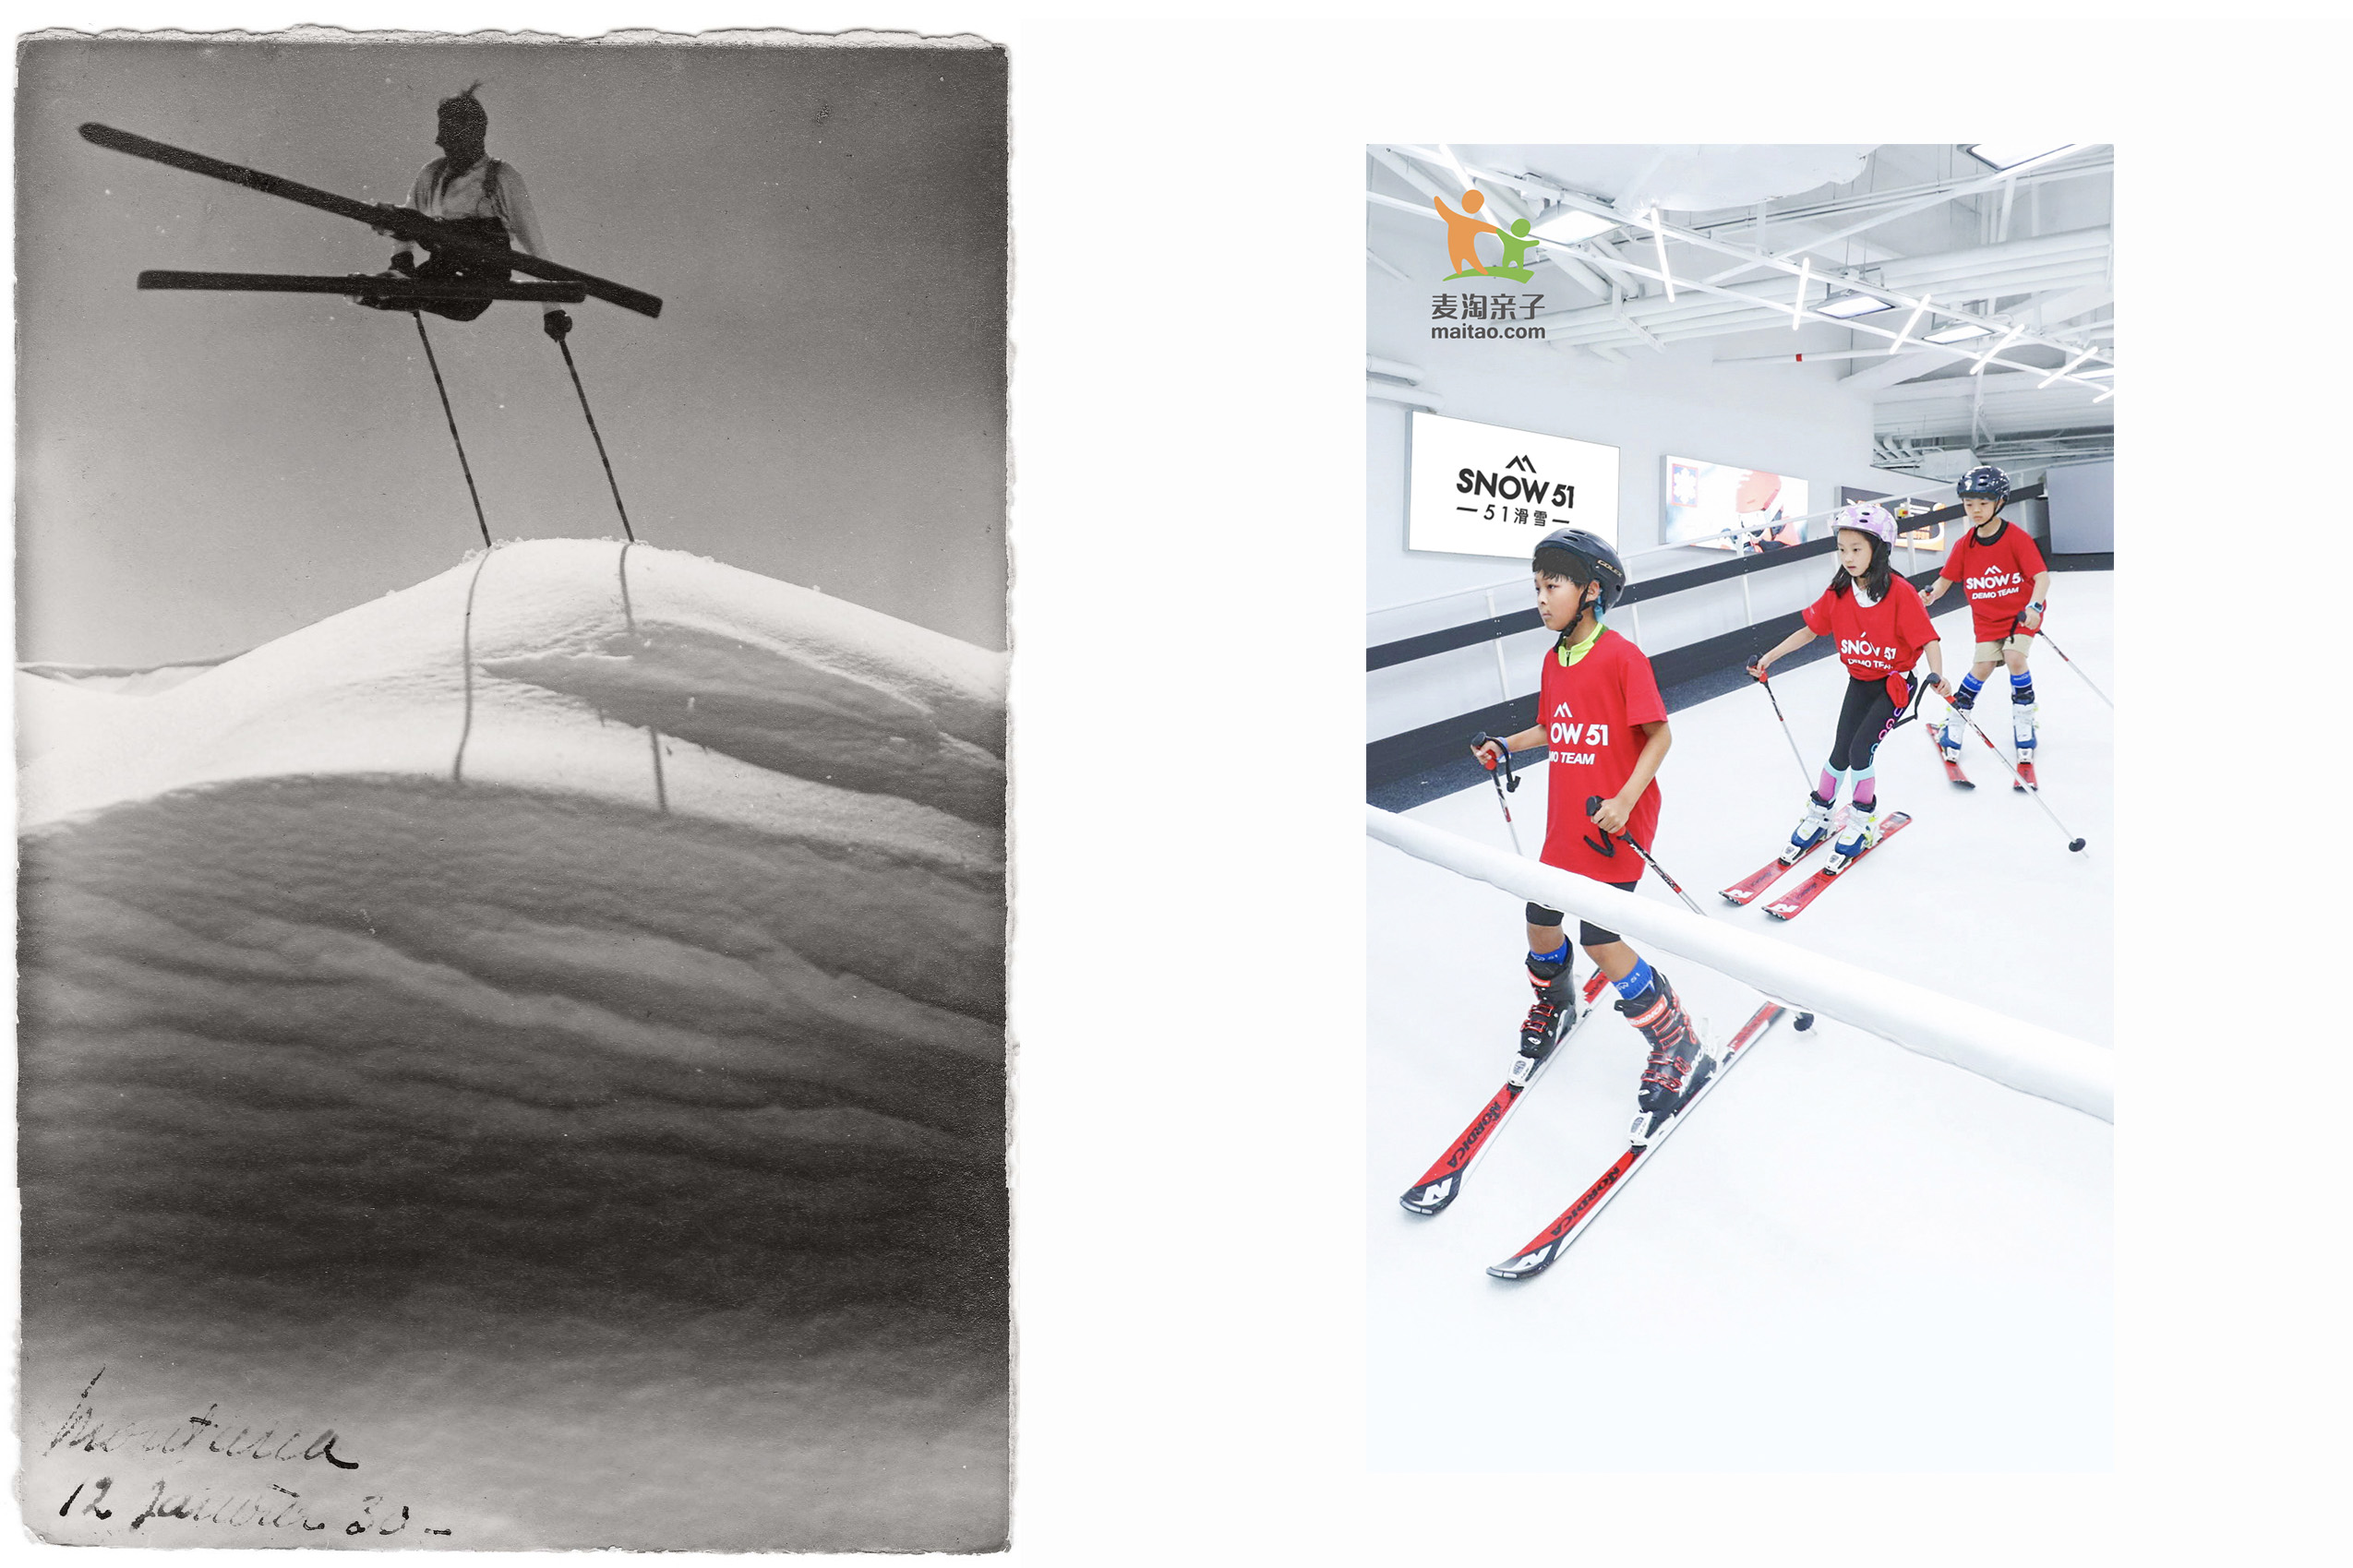 متزلج في ثلوج عميقة وثلاثة طلاب صينيين يتزلجون داخل قاعة شاسعة